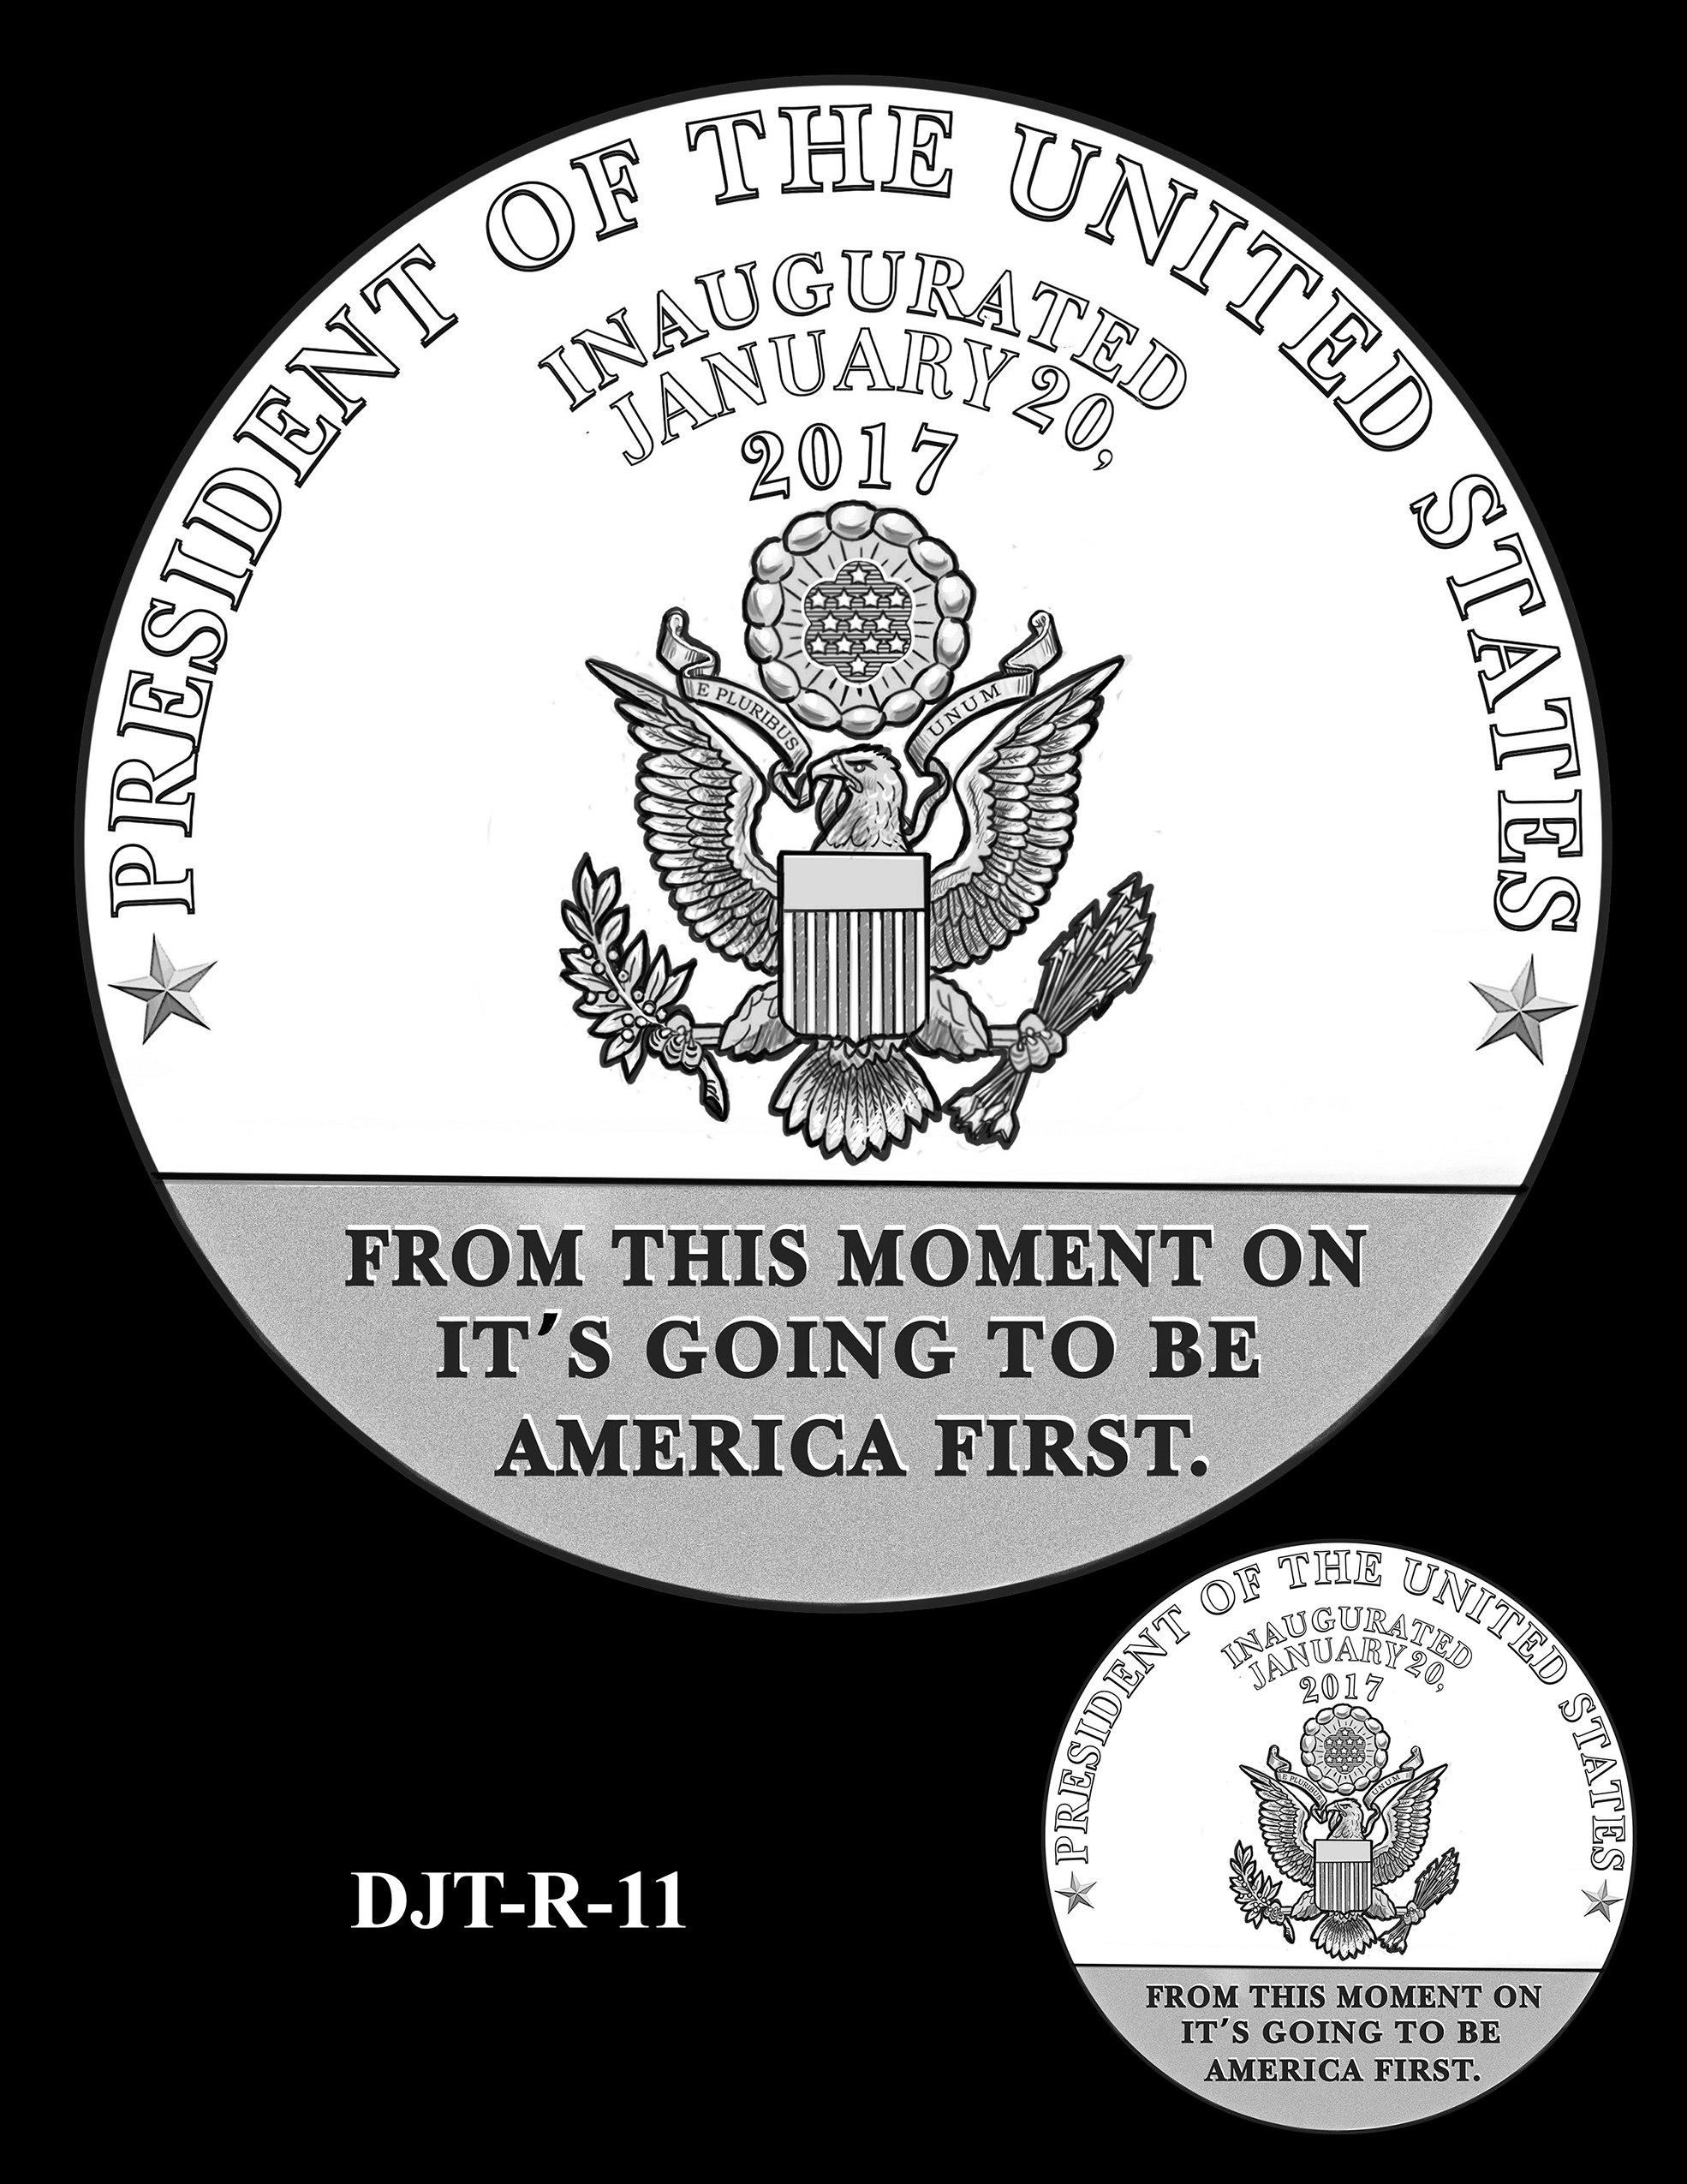 DJT-R-11 -- Donald J. Trump Presidential Medal